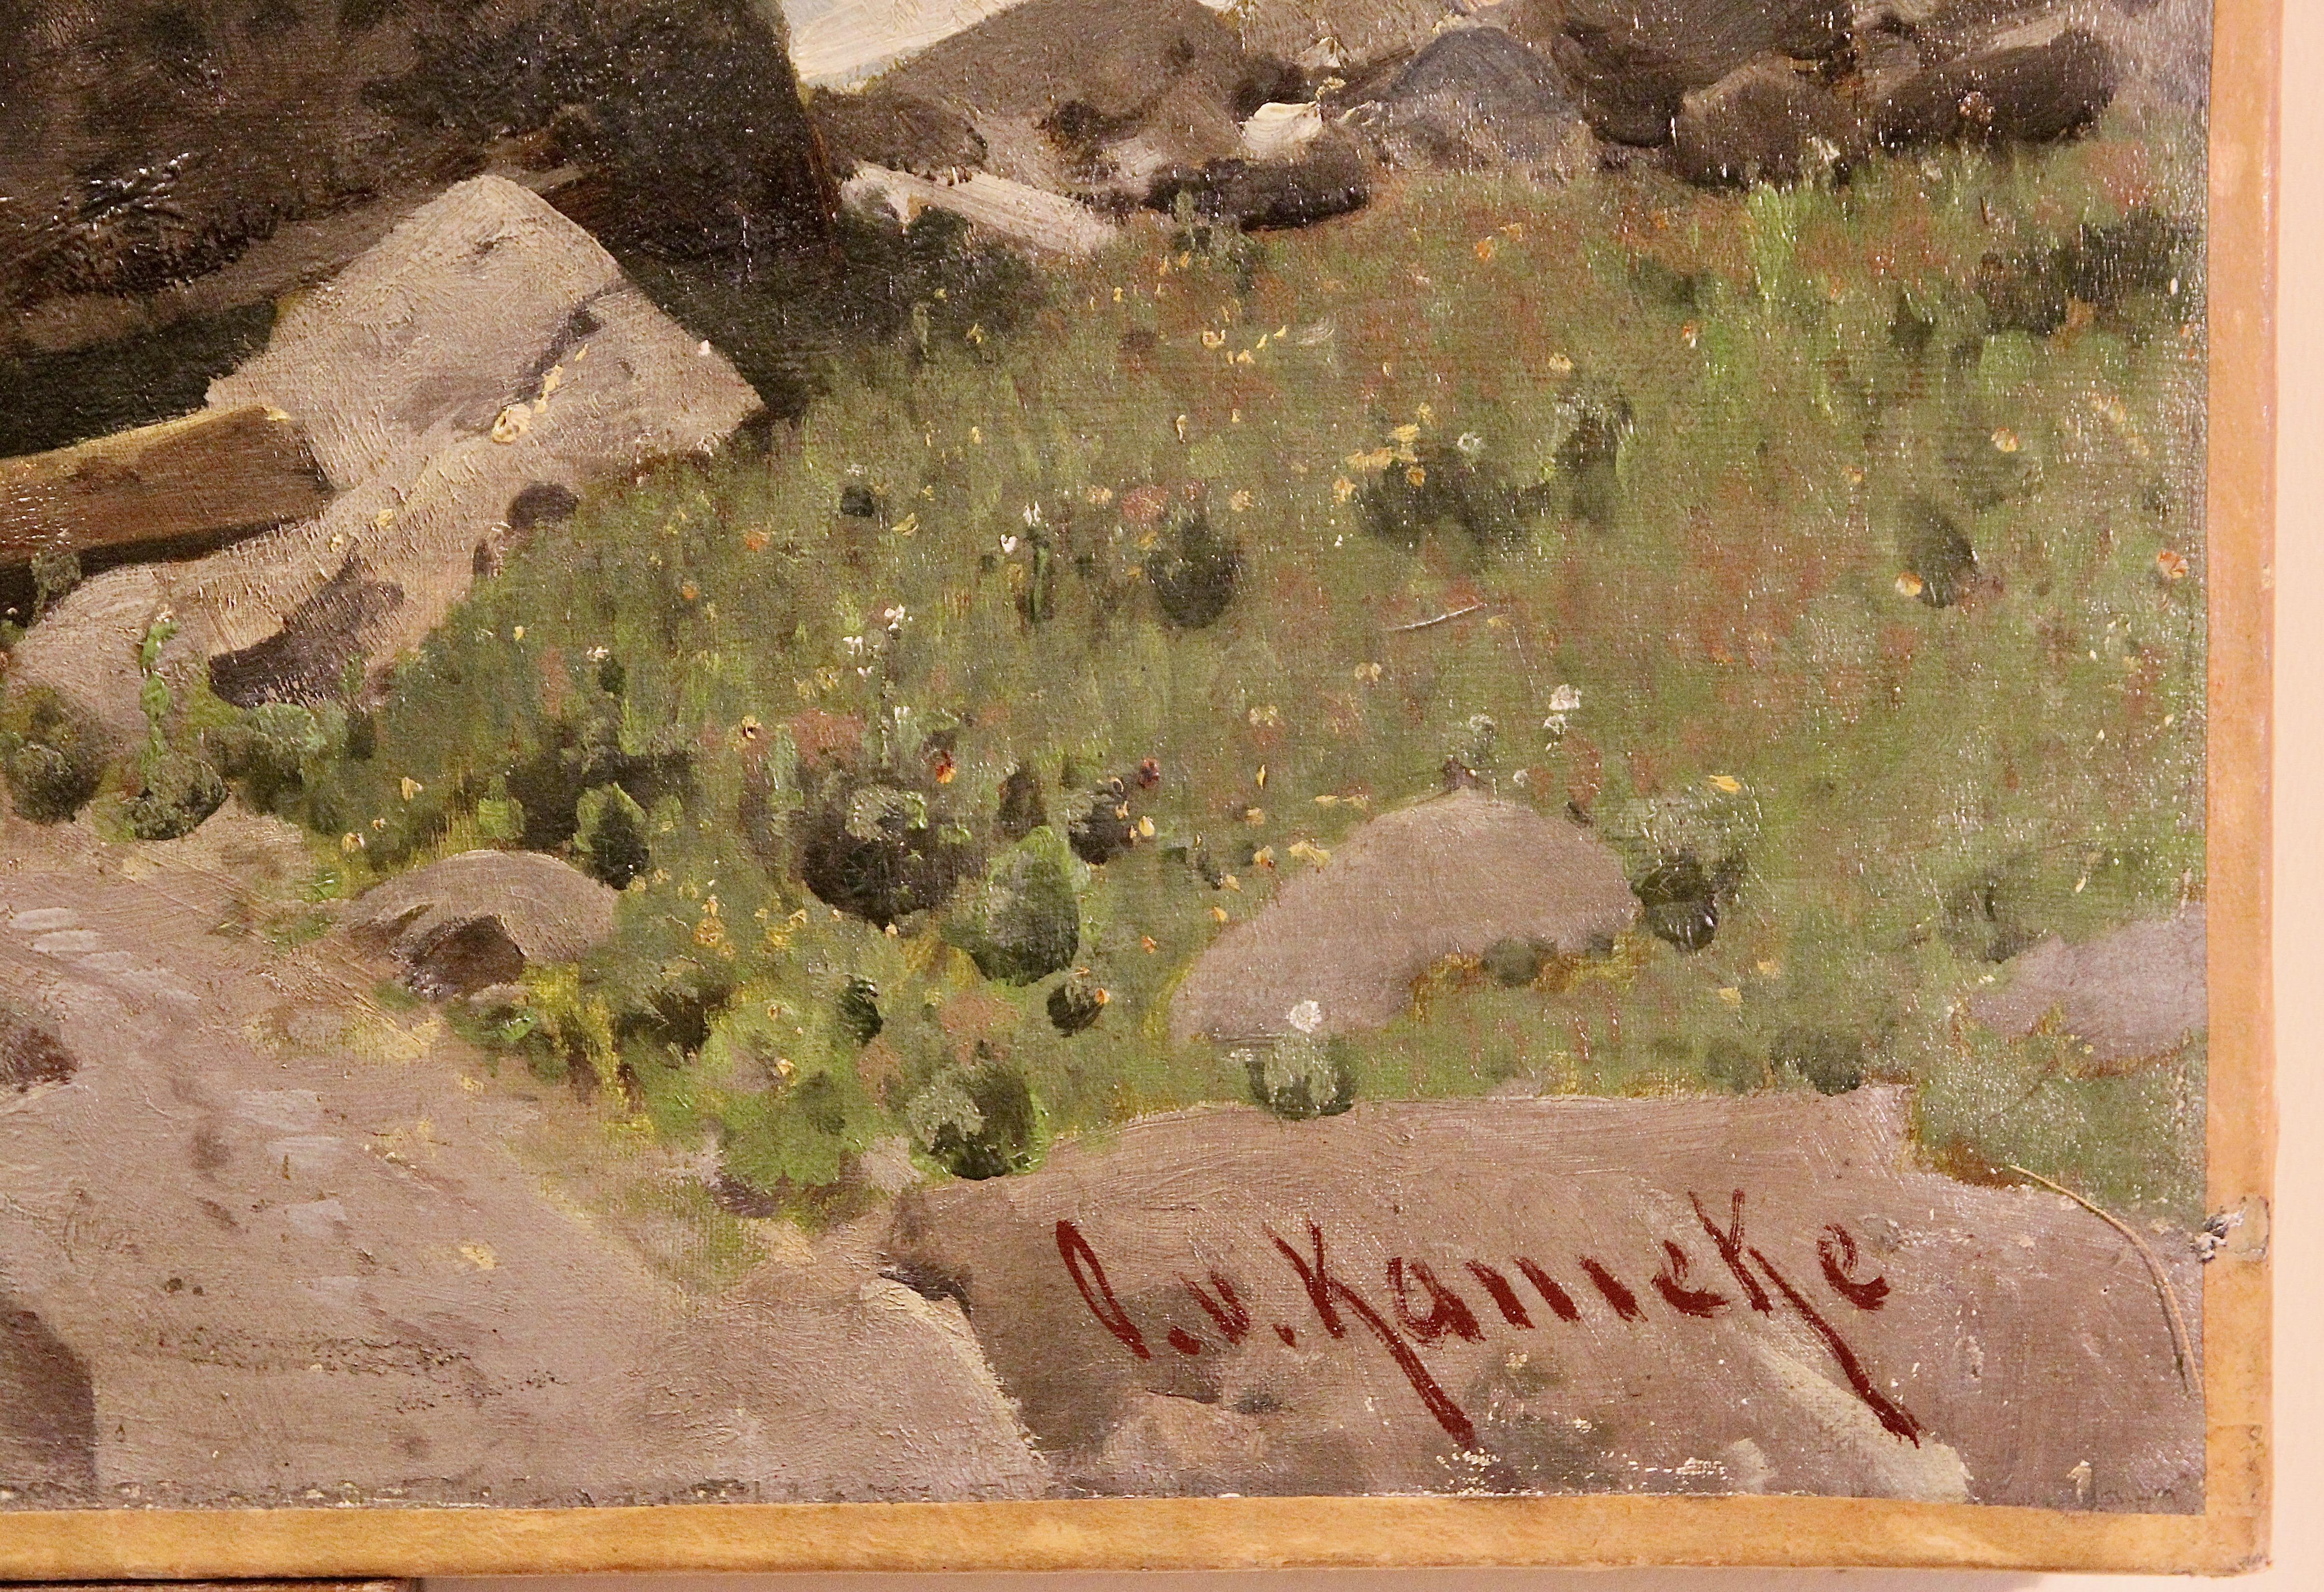 High Alpine Landscape, Alps. Oil Painting by Otto Werner Henning von Kameke. - Brown Landscape Painting by Otto von Kameke